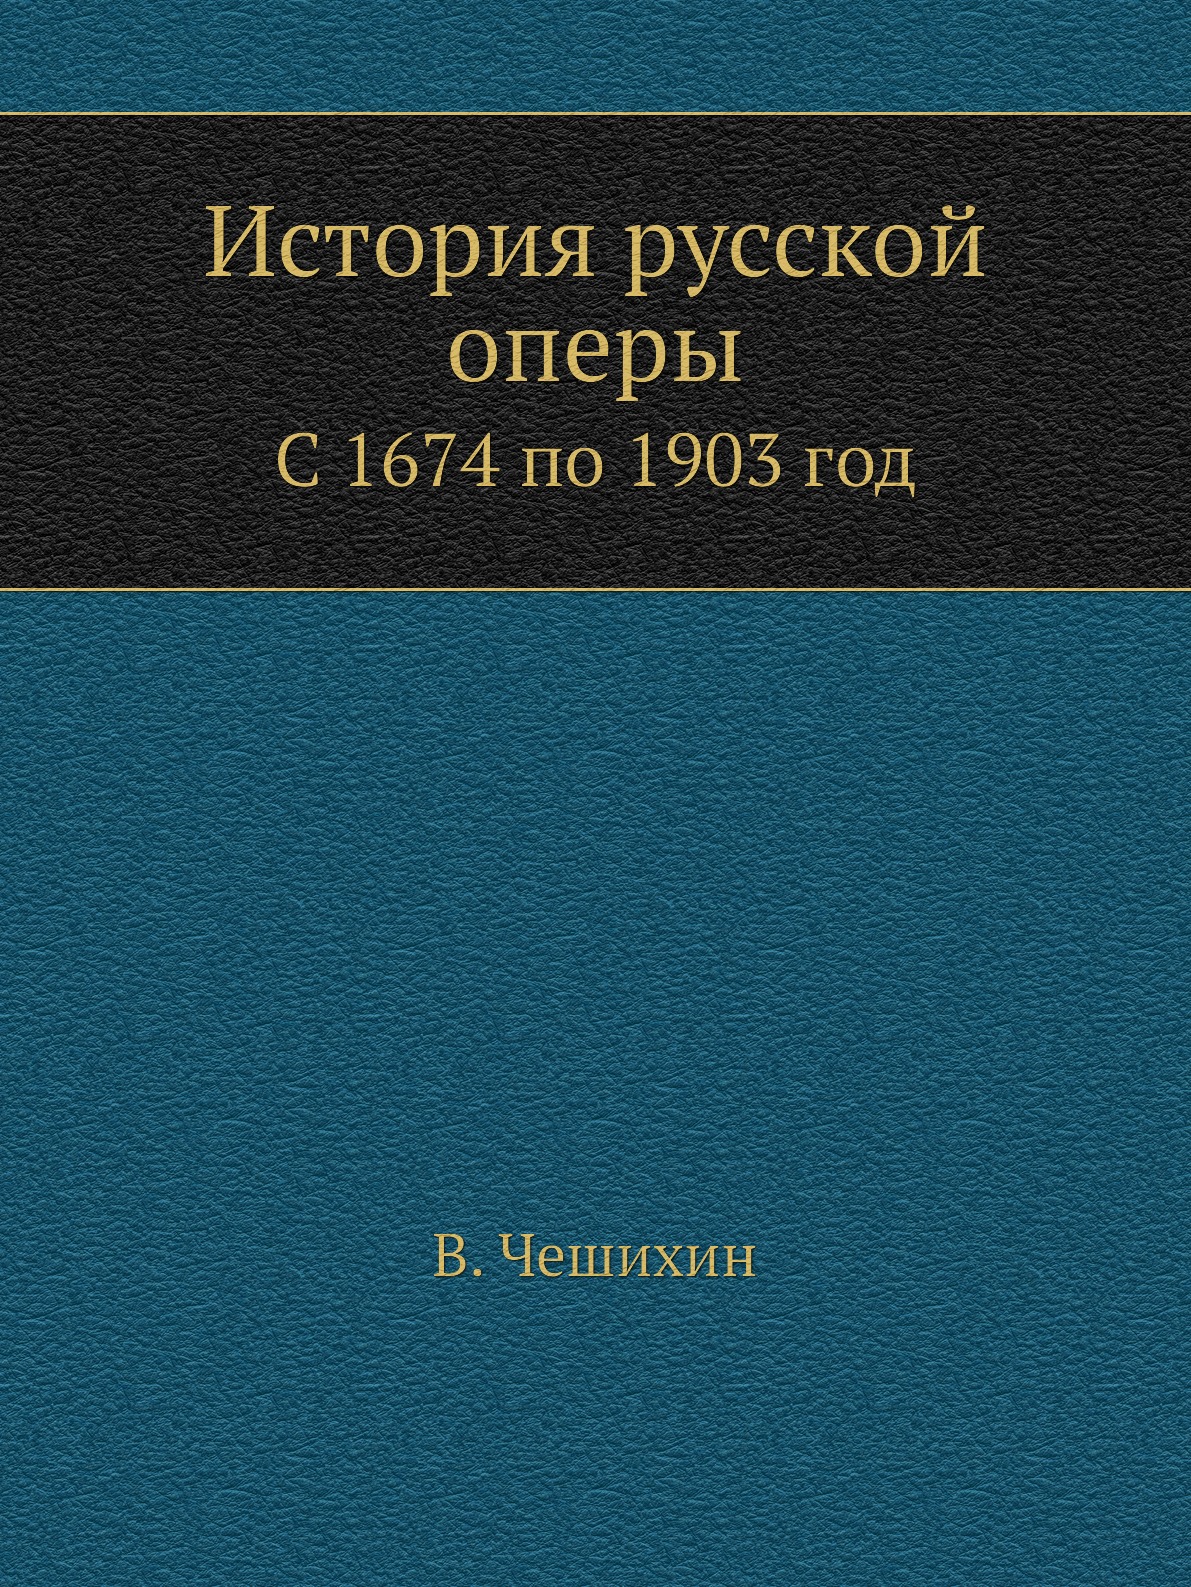 

Книга История русской оперы. С 1674 по 1903 год